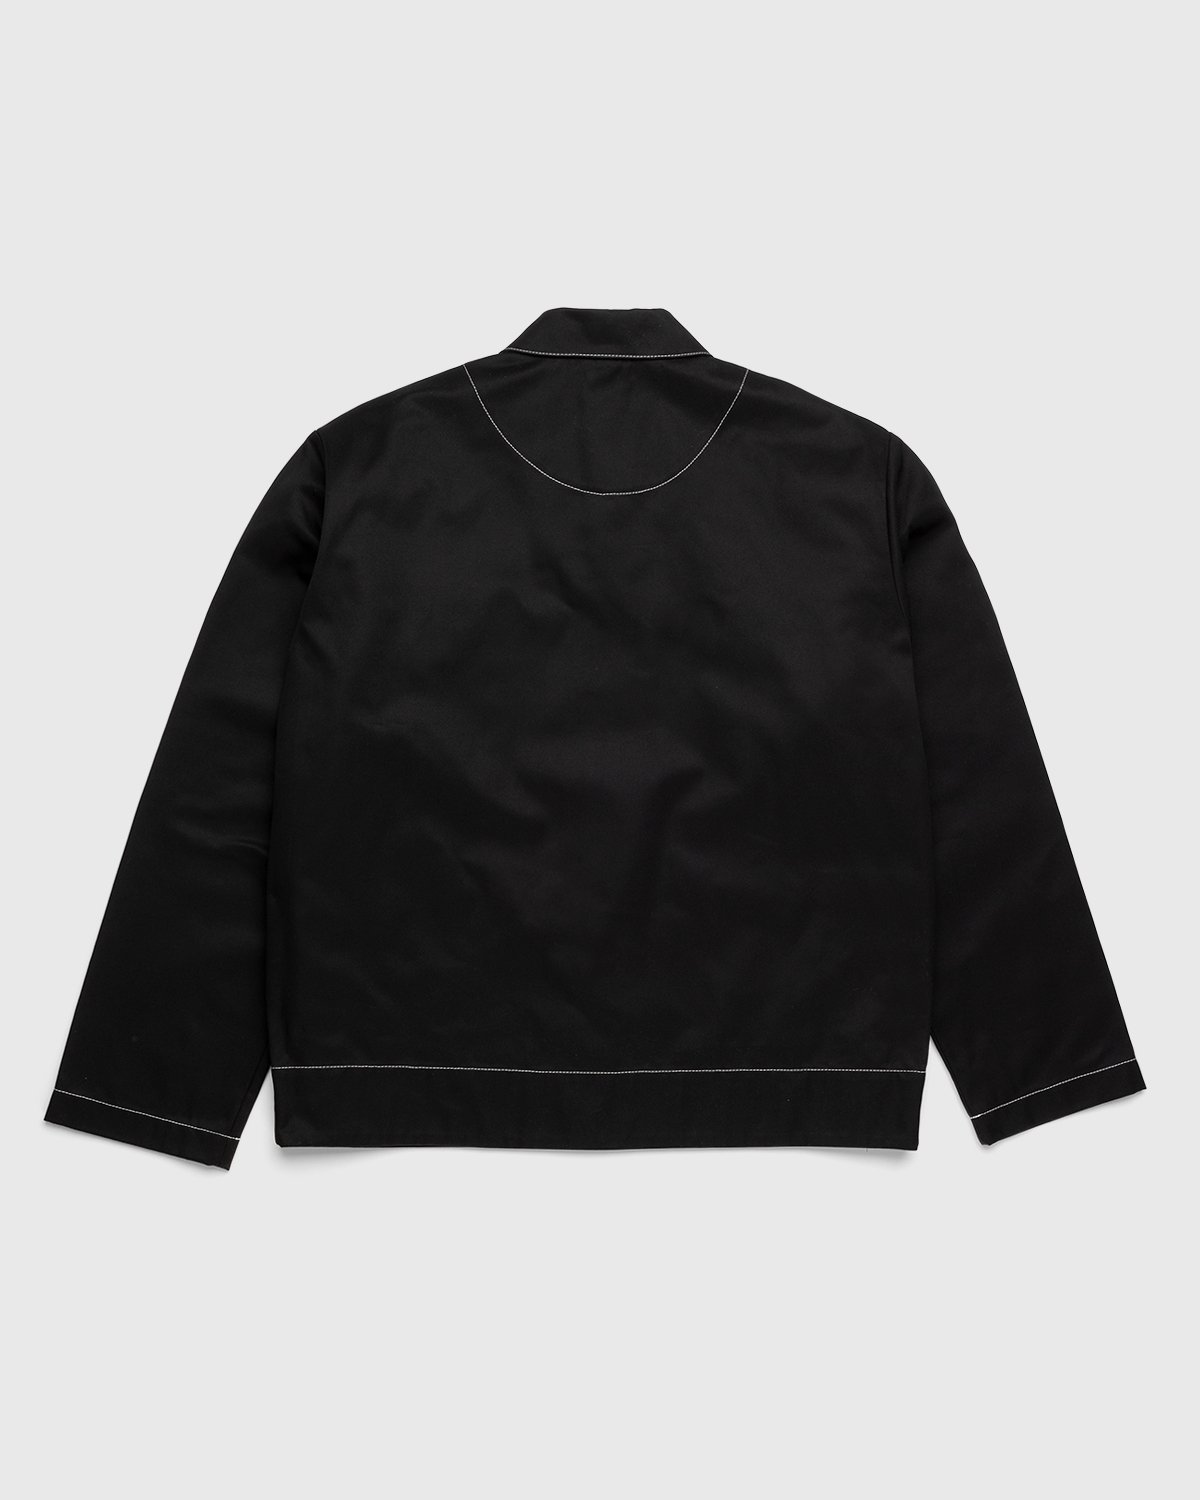 Acne Studios - Heavy Twill Jacket - Clothing - Black - Image 2